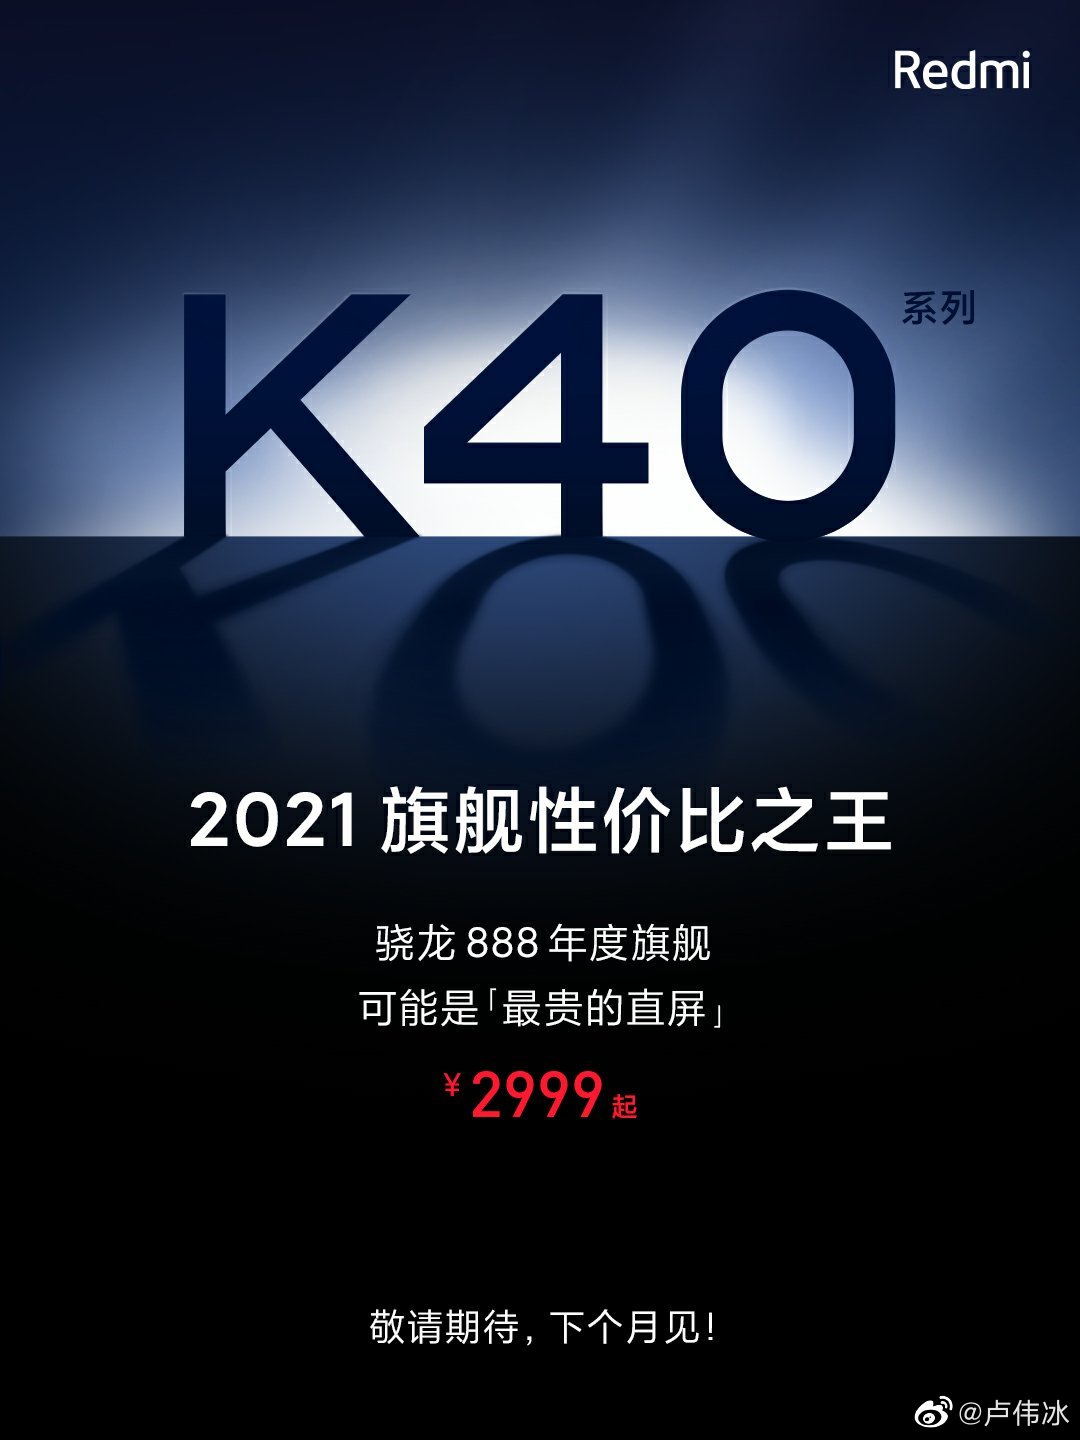  Первая официальная информация о Xiaomi Redmi K40 Xiaomi  - pervye_oficialnye_spojlery_xiaomi_redmi_k40_harakteristiki_i_cena_picture2_0